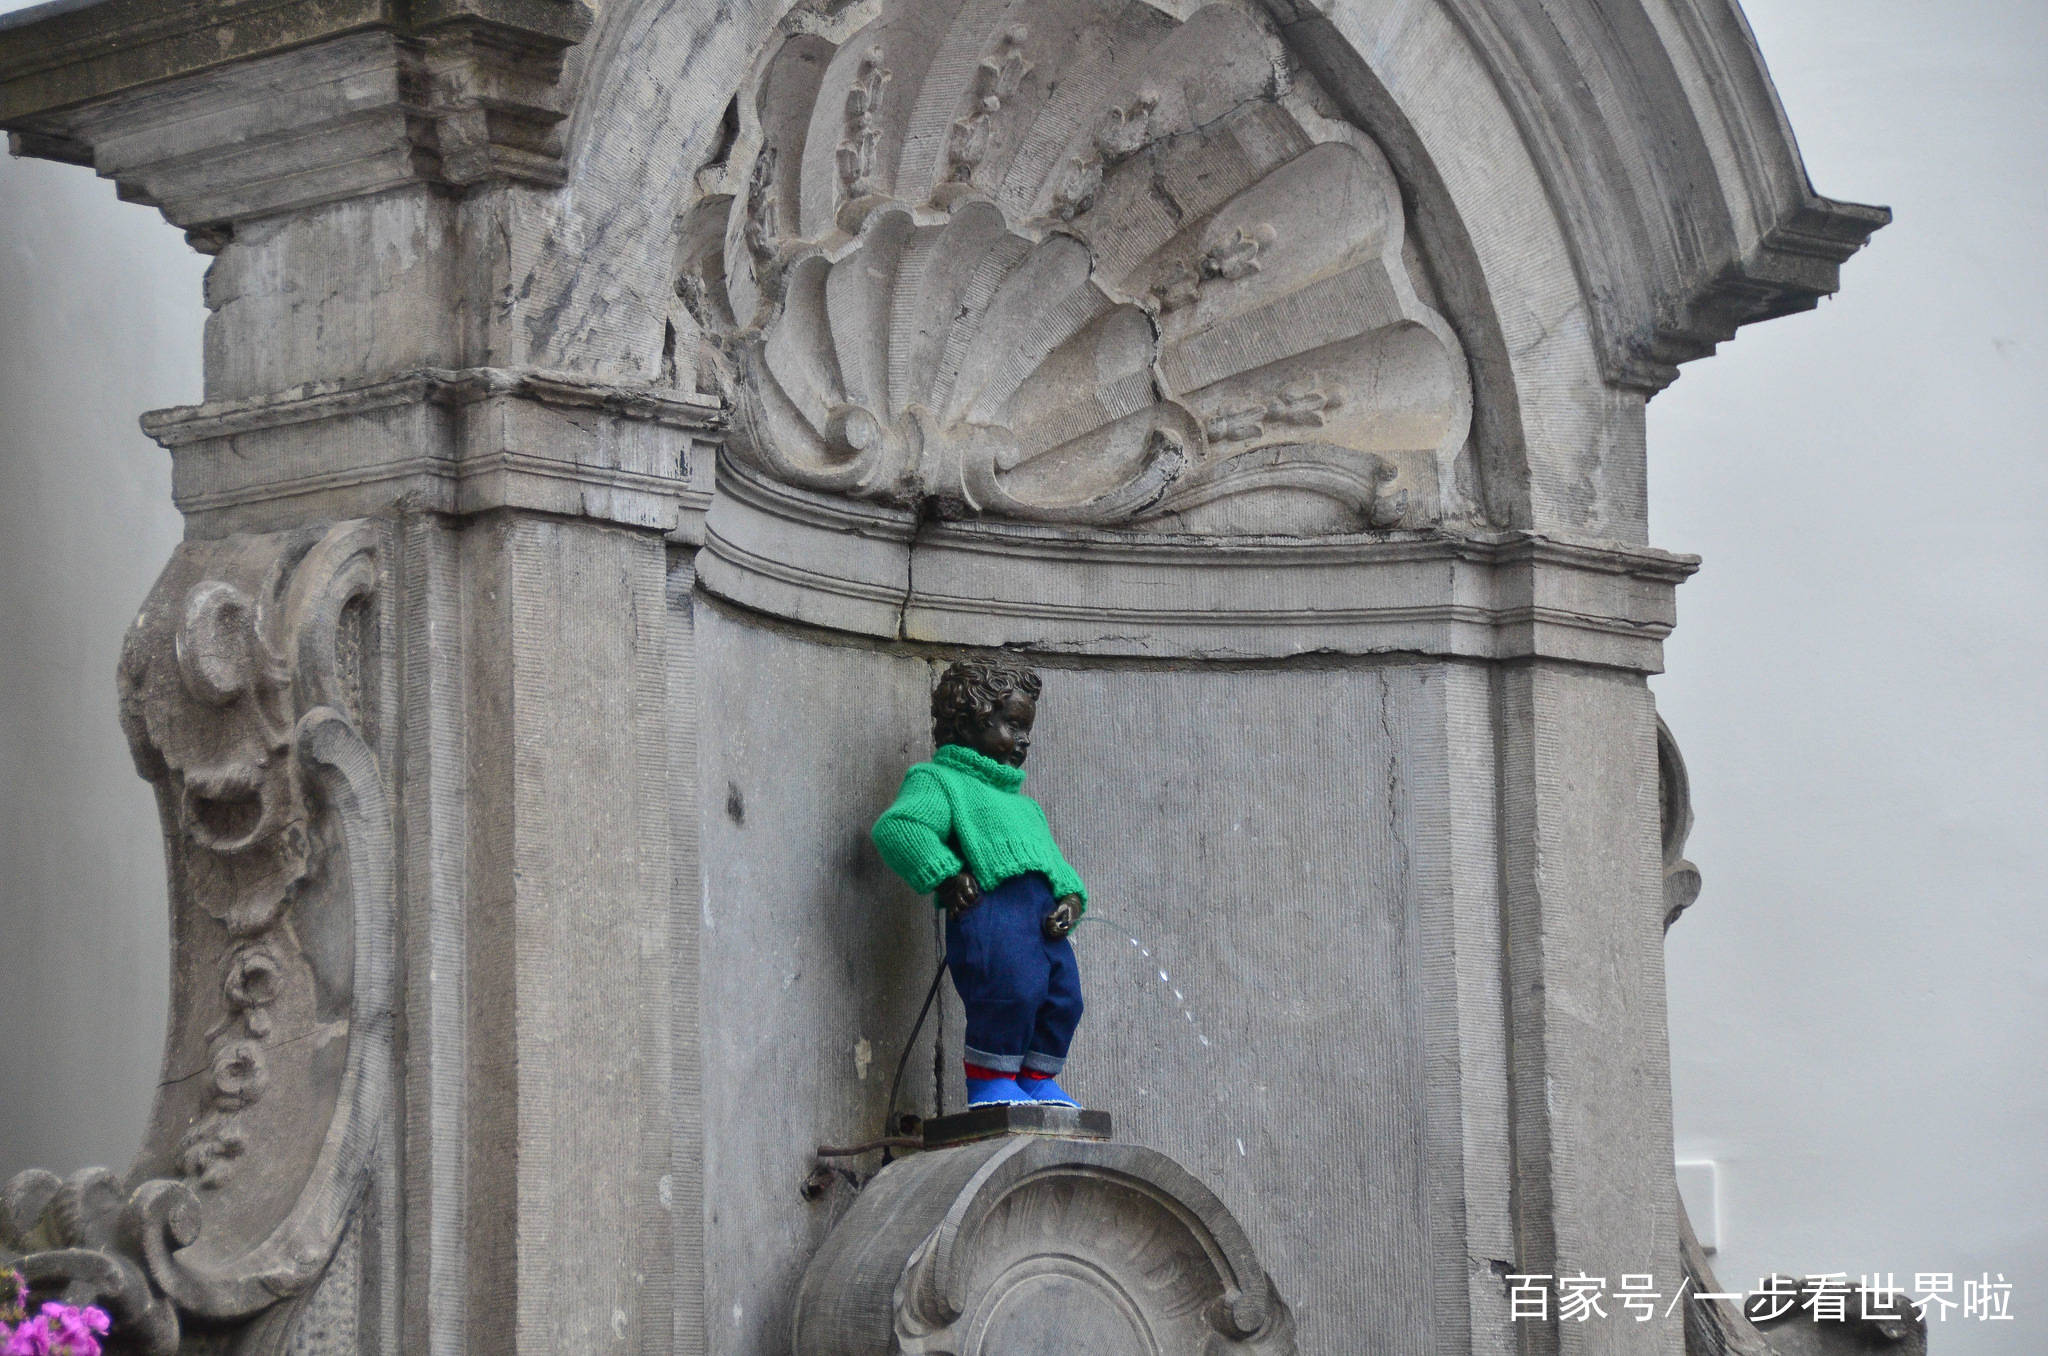 这个小男孩在广场上尿了数百年，如今各国政要都会给他送衣服